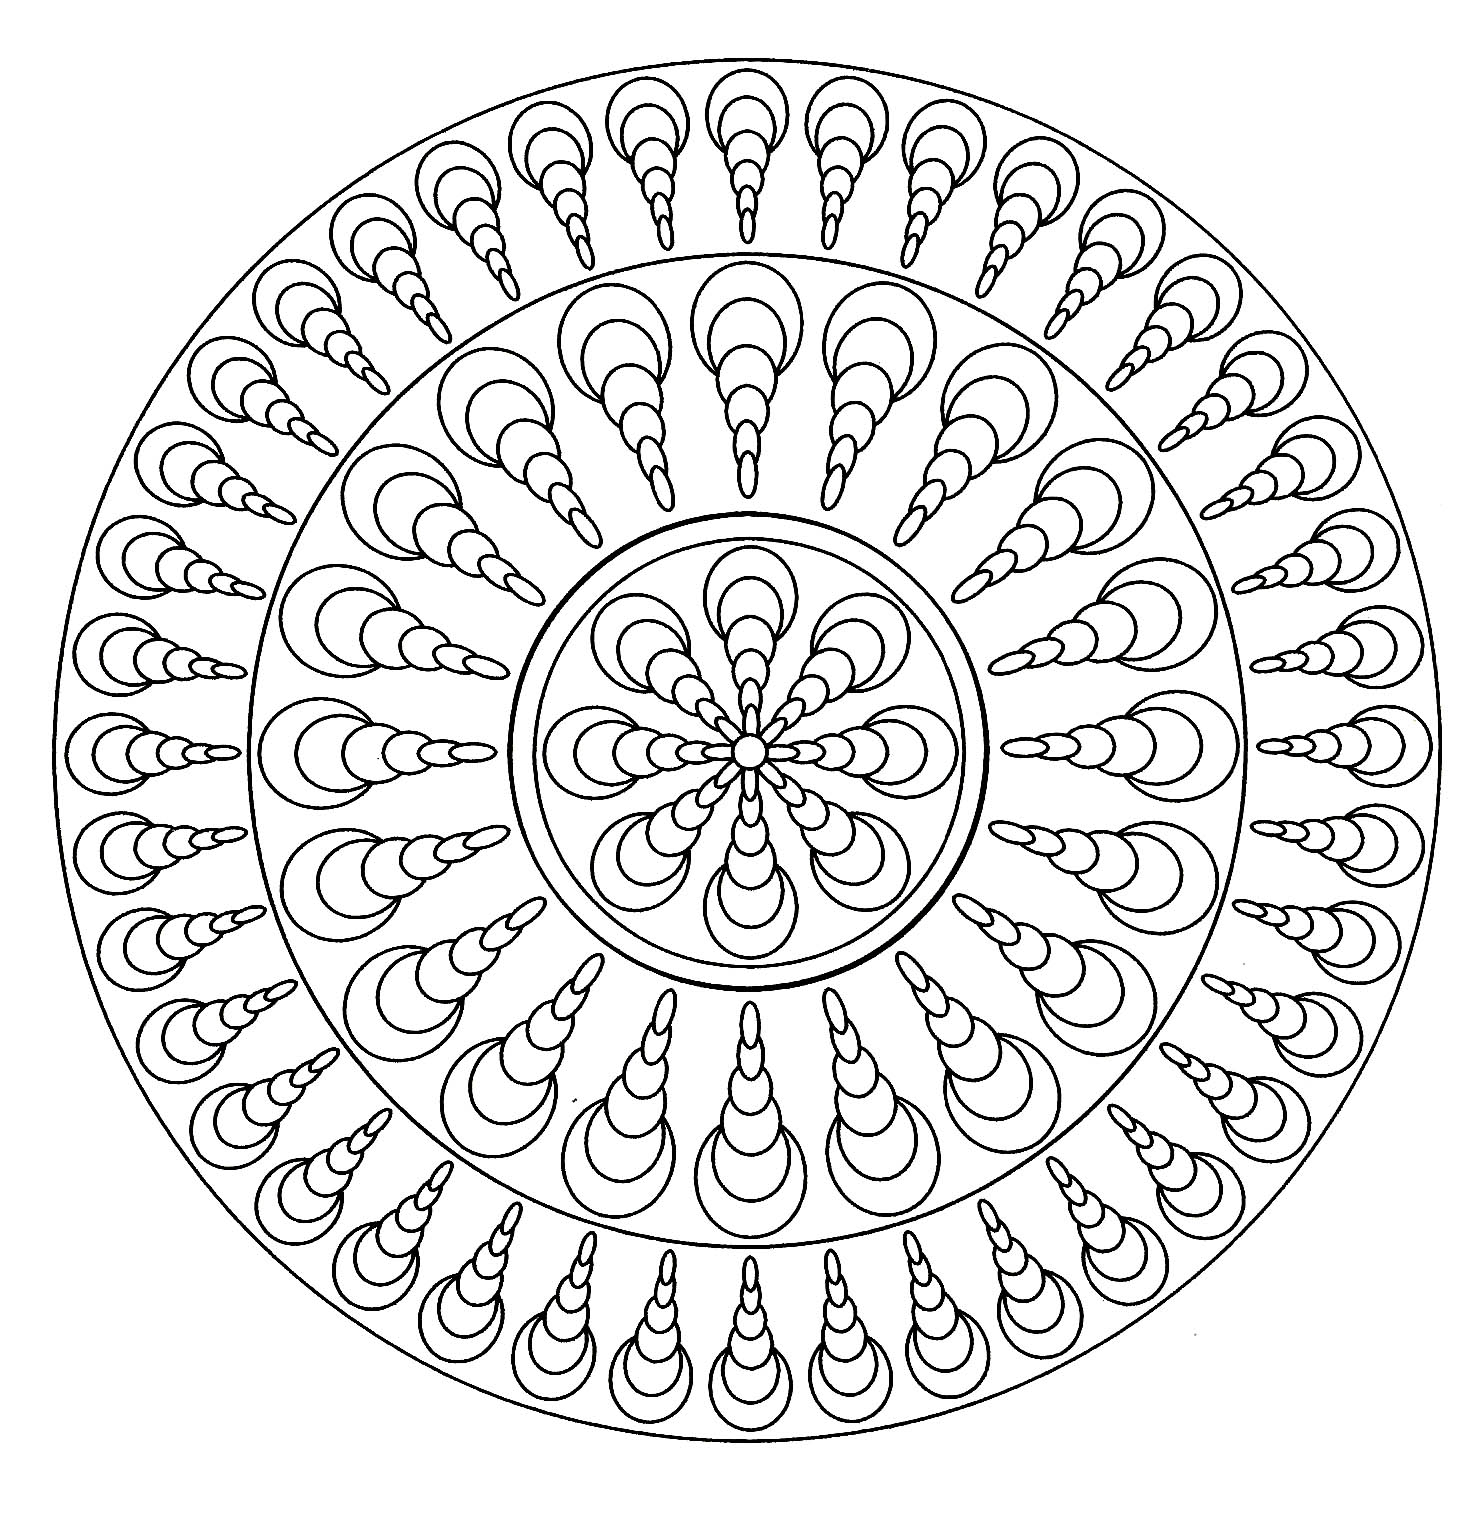 Mandala mit in dieselbe Richtung gerichteten Schalen